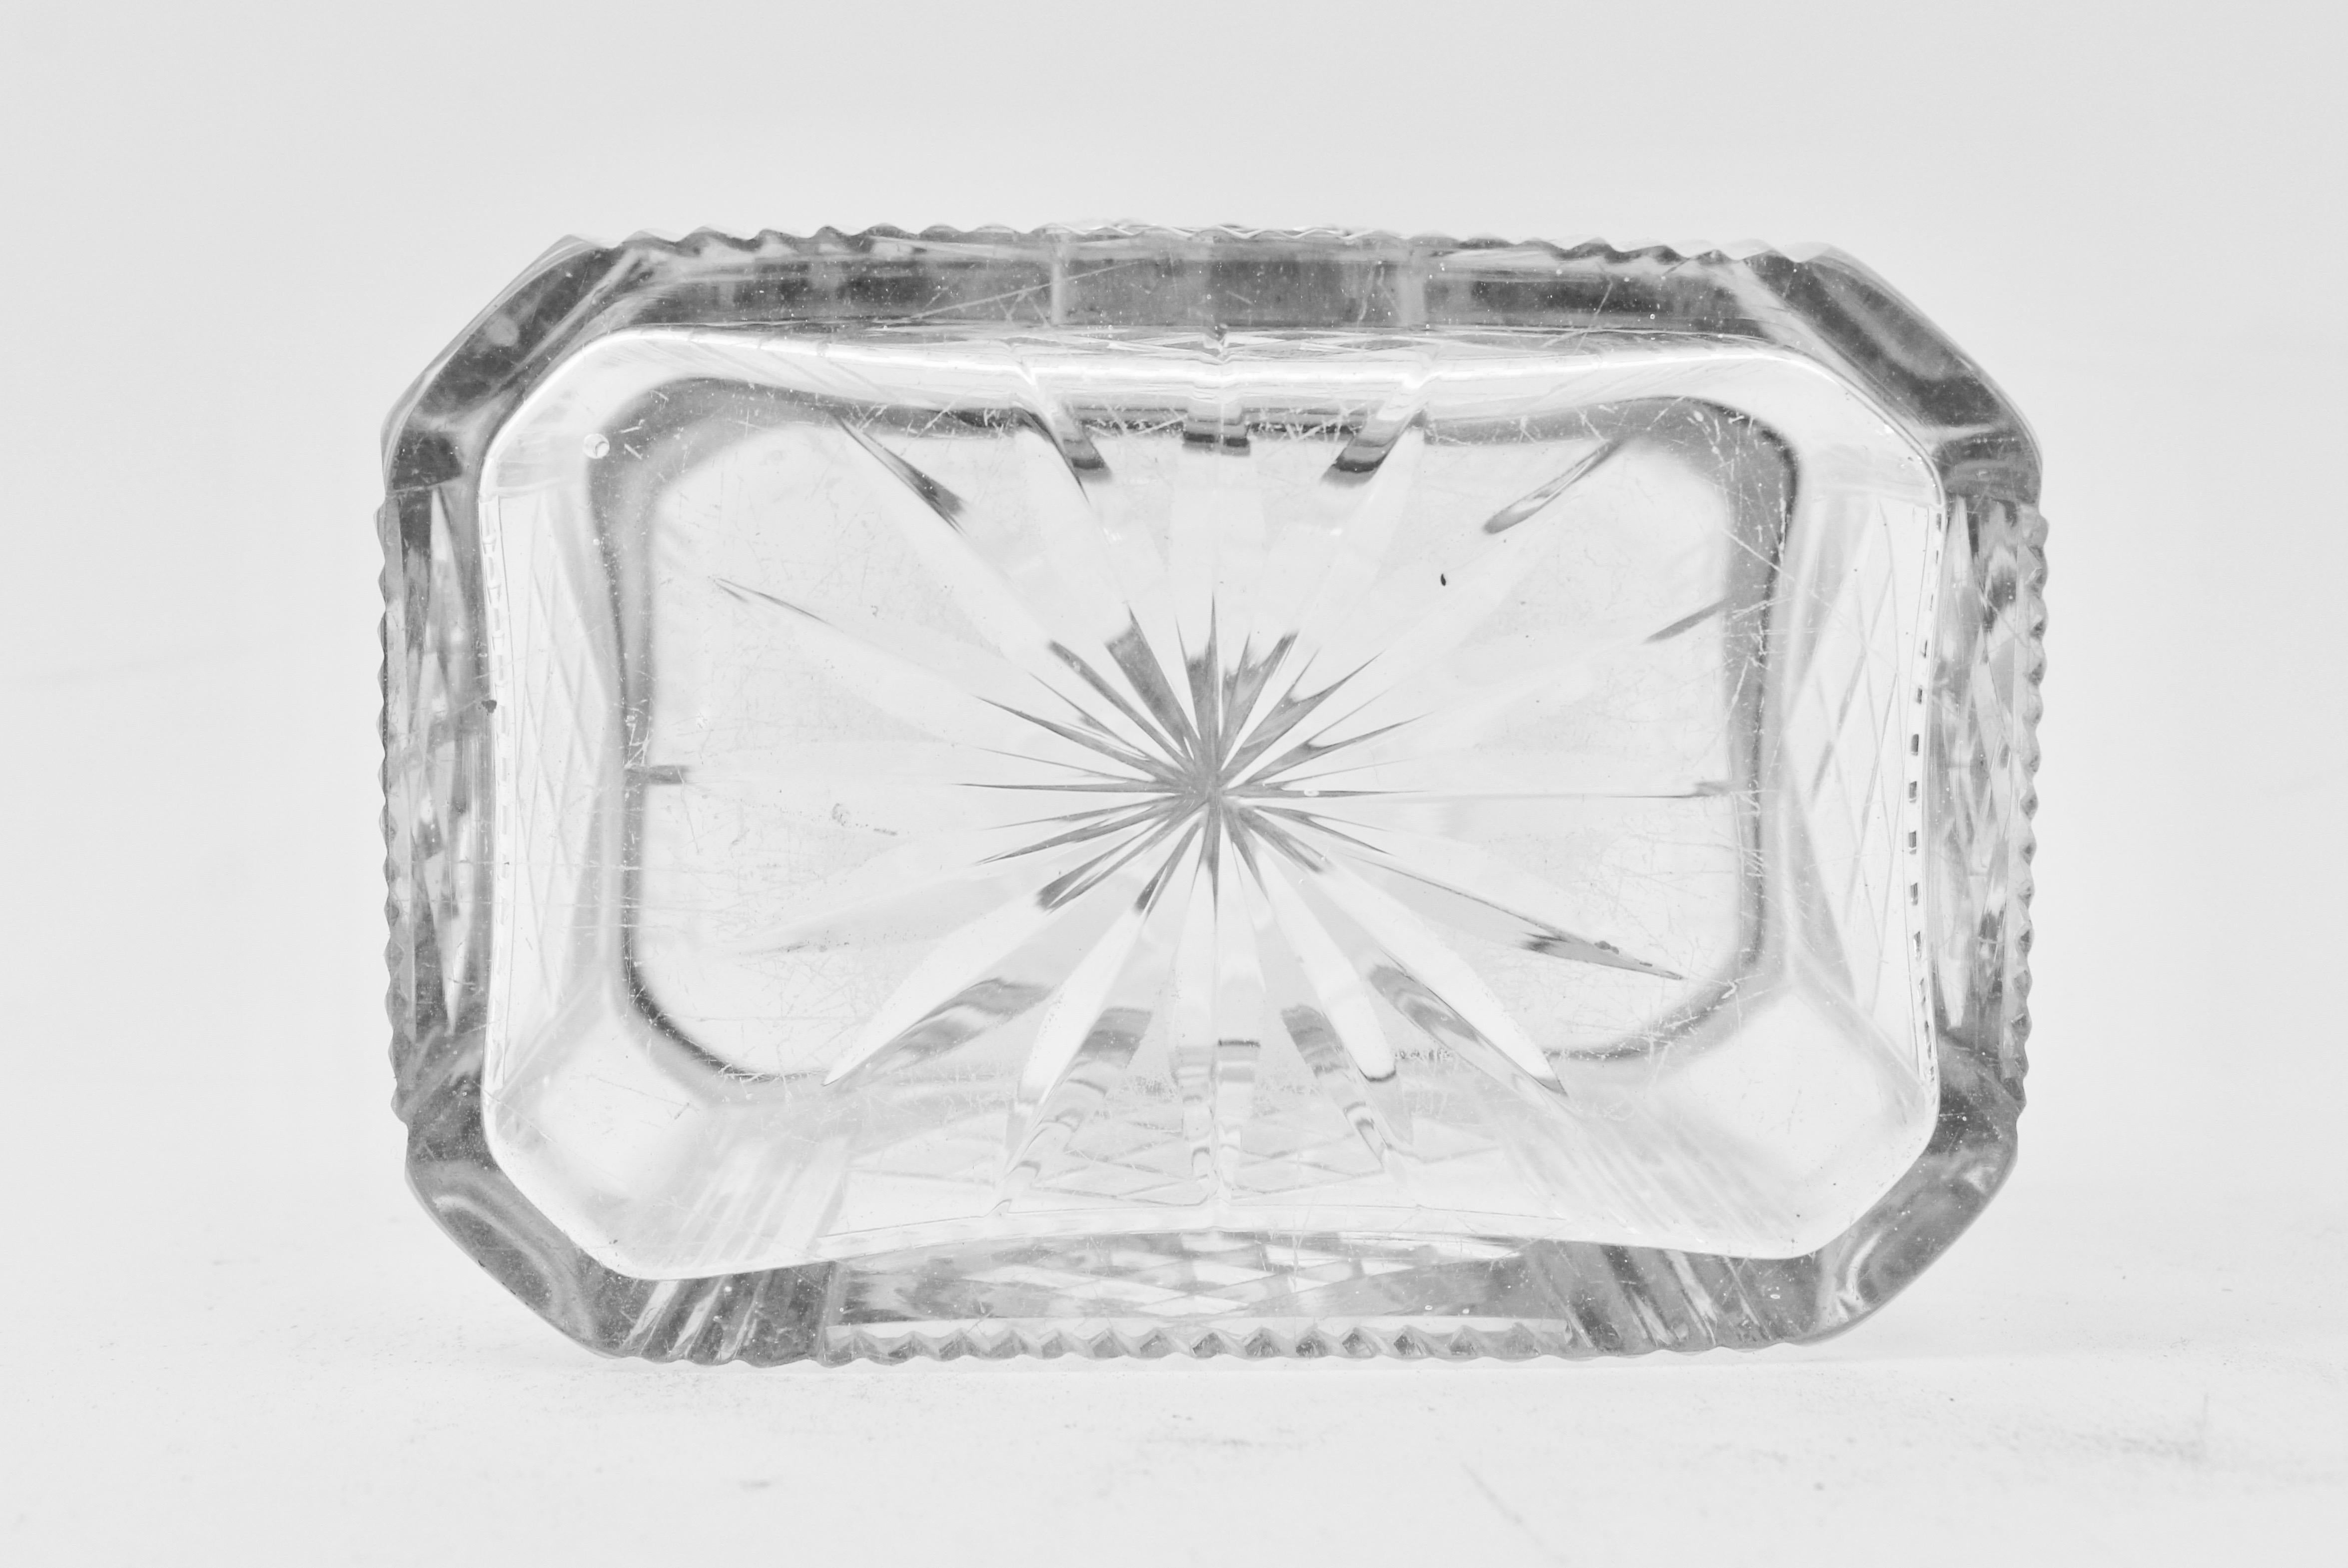 Continental Cut Glass and Silver Decorative Box, circa 1900 For Sale 4